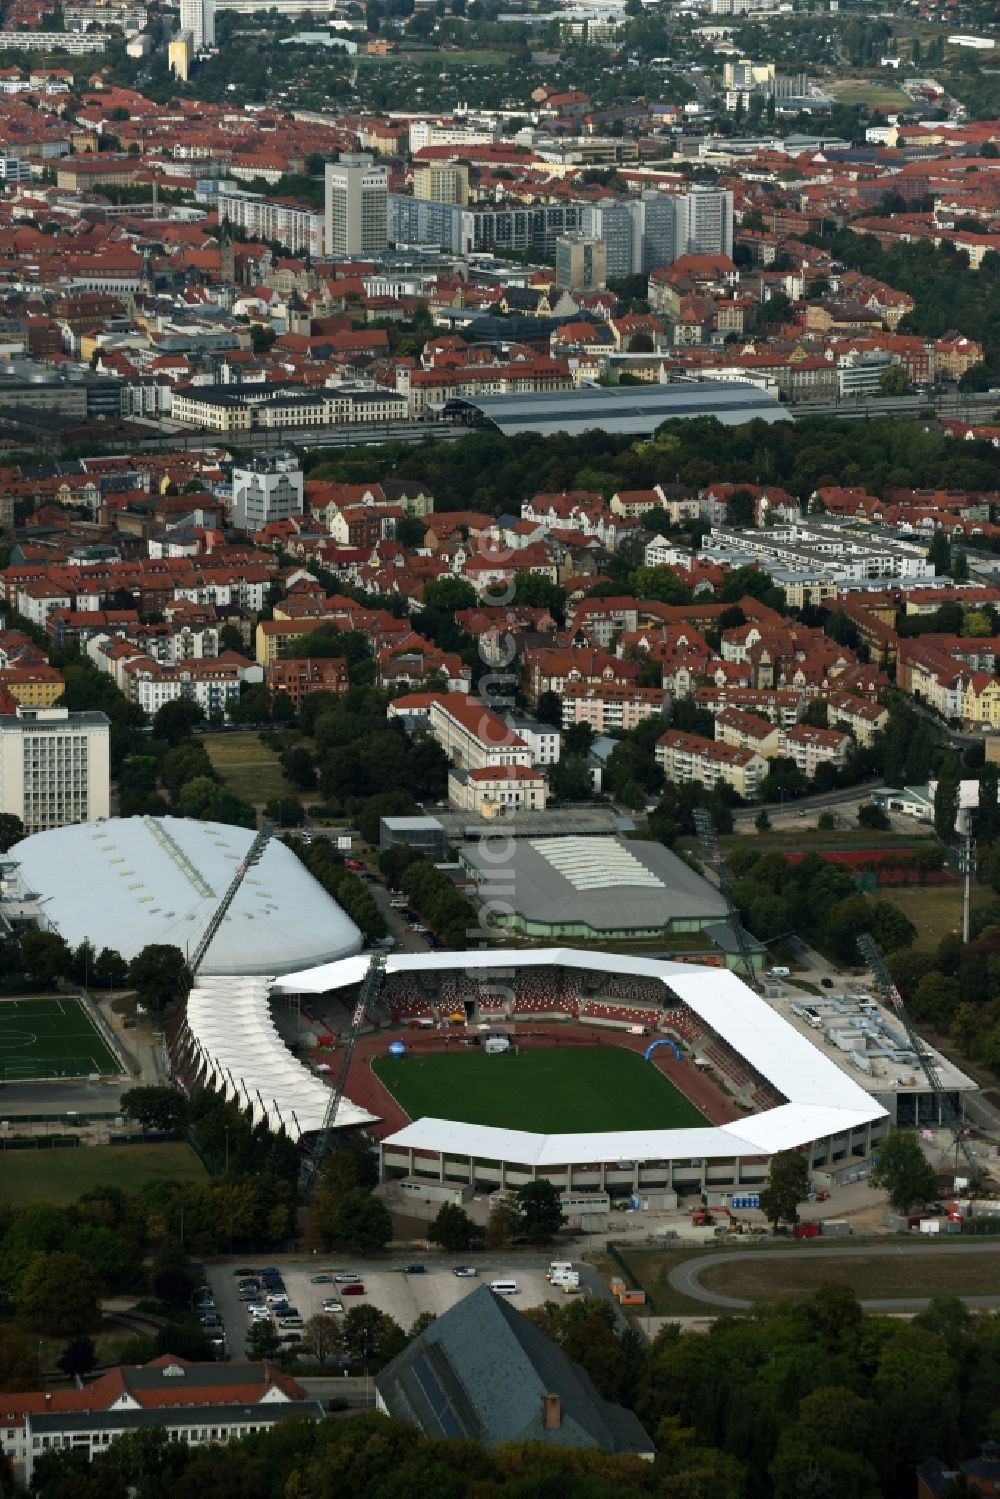 Luftaufnahme Erfurt - Baustelle zum Umbau der Arena des Stadion Steigerwaldstadion in Erfurt im Bundesland Thüringen